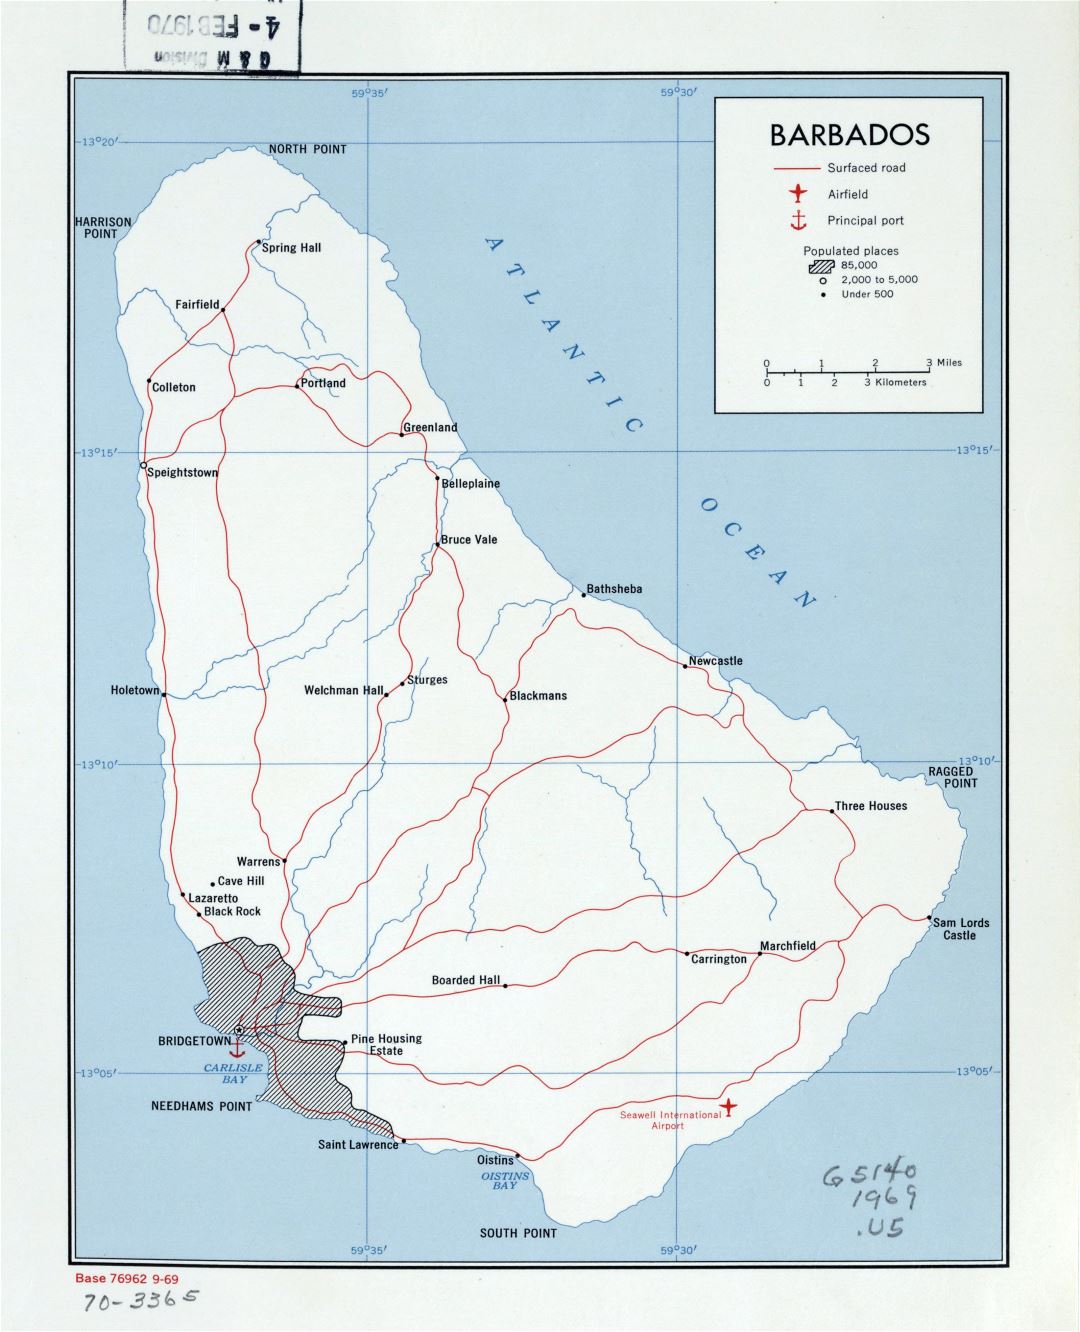 Большая детальная политическая карта Барбадоса с дорогами, городами, портами и аэропортами - 1969